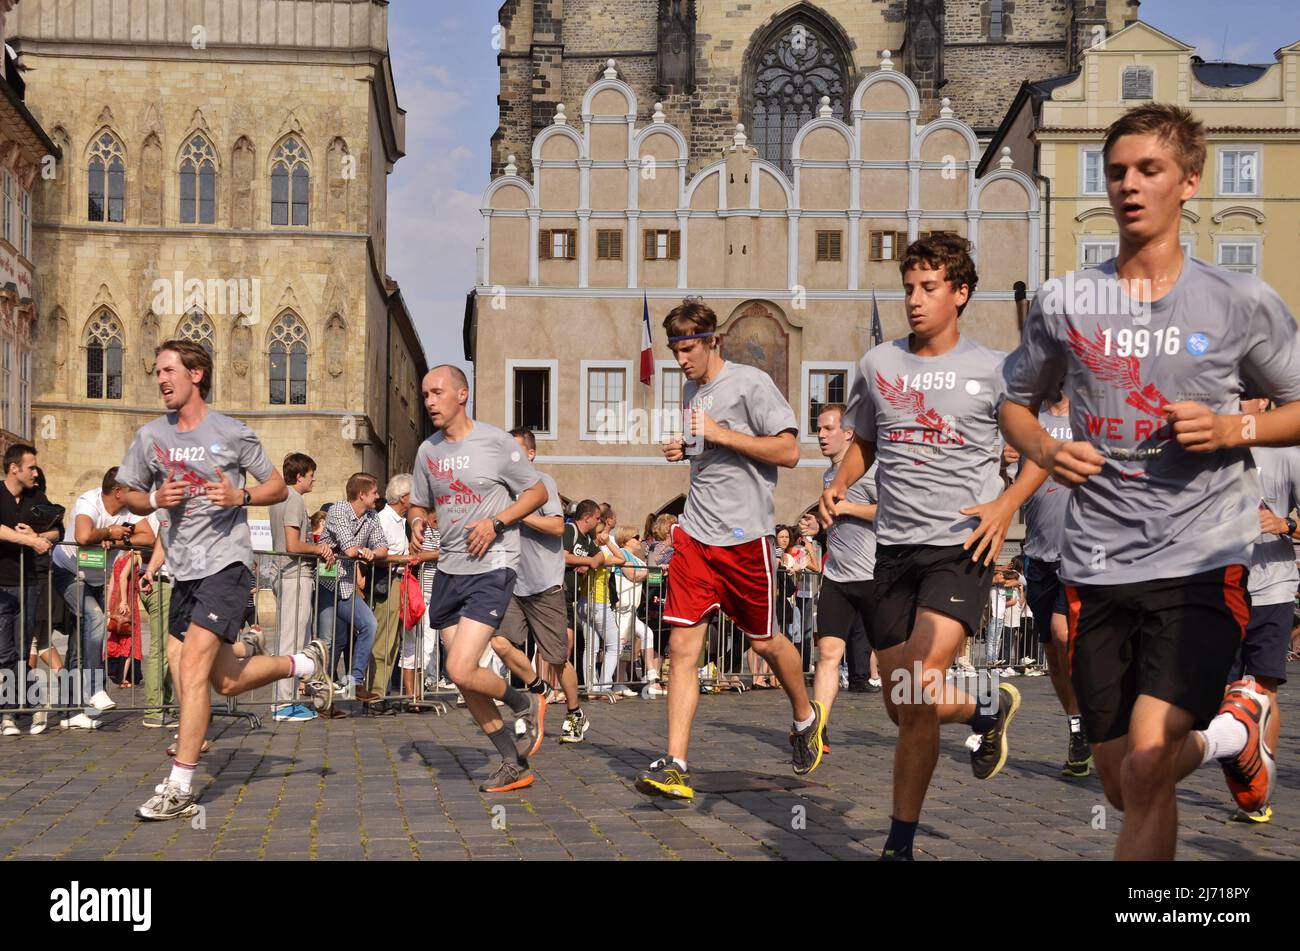 Wir führen Prag 2013 aus, Teilnehmer des jährlichen Laufwettbewerbs in der Altstadt von Prag, Tschechien. Stockfoto